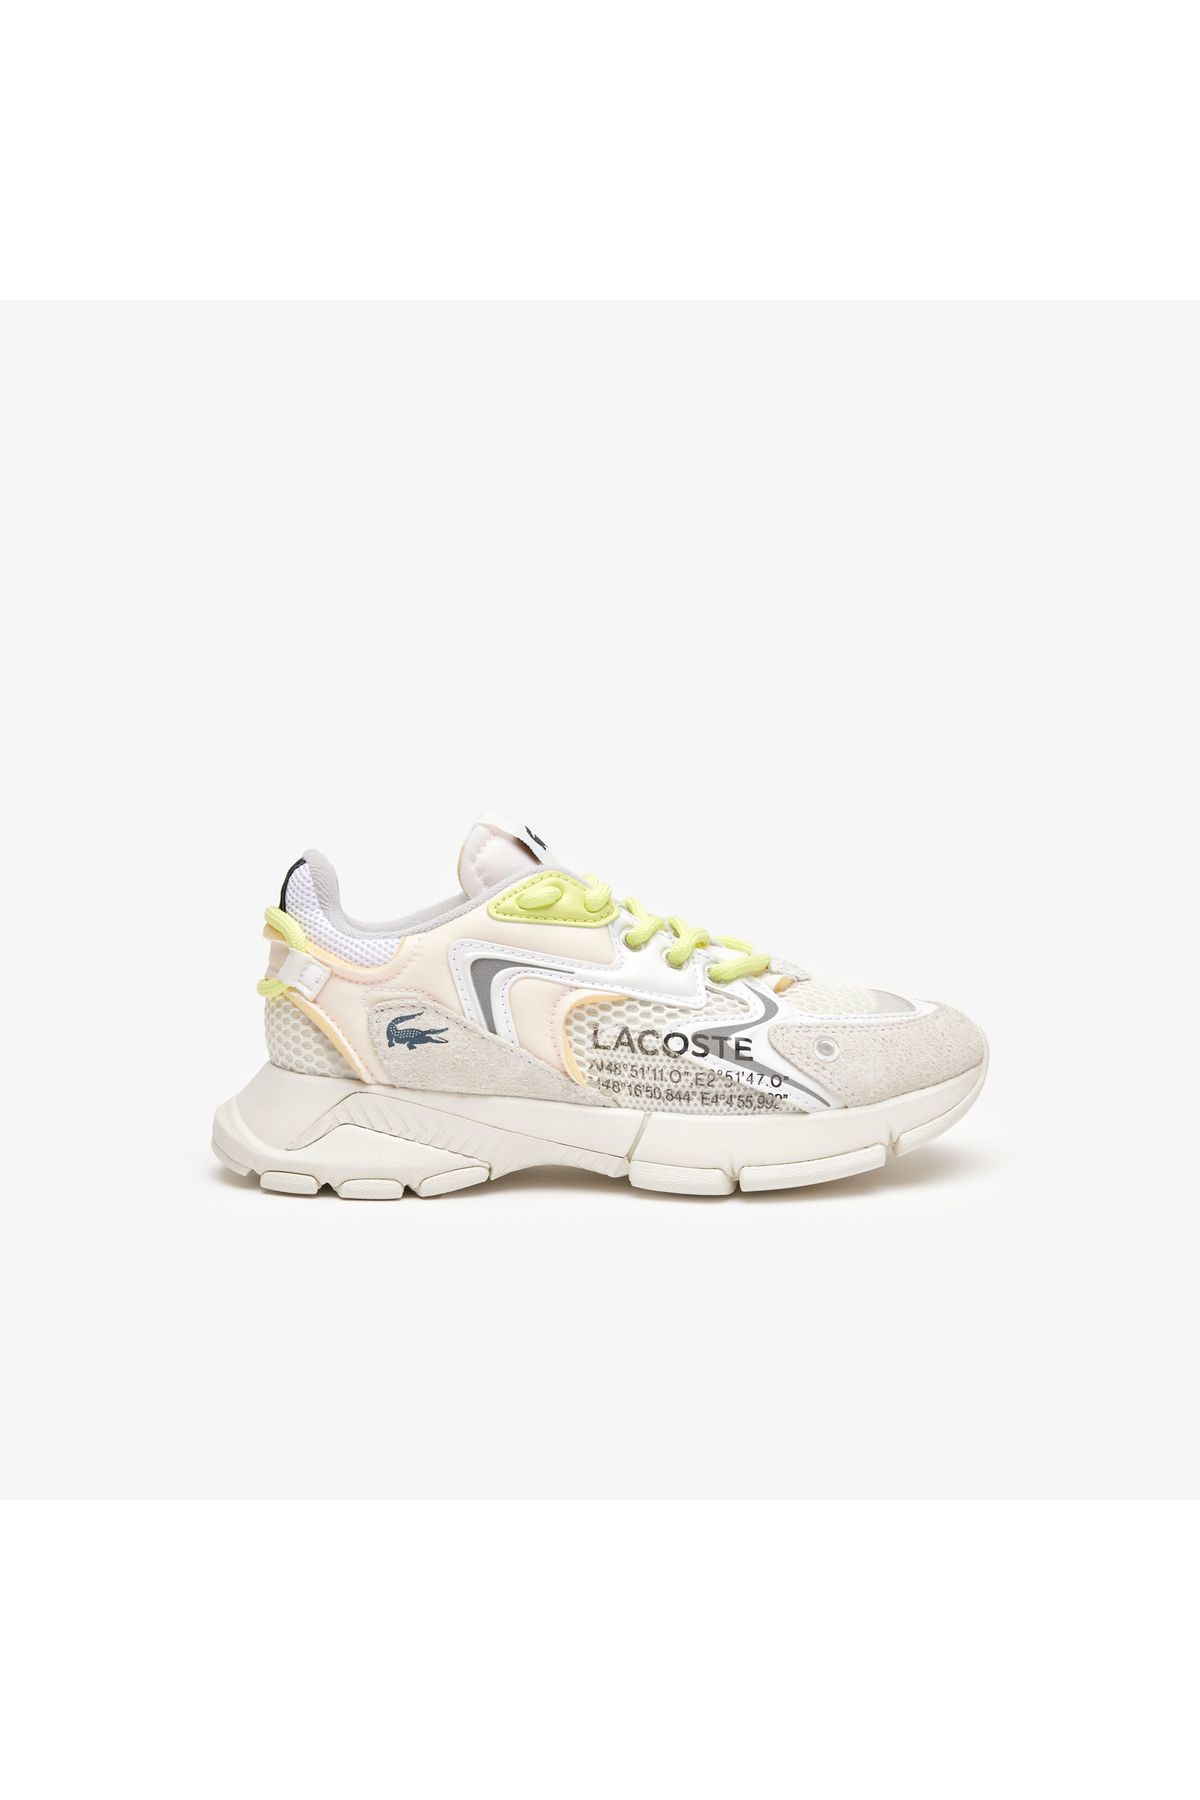 Lacoste Sport L003 Neo Kadın Beyaz Sneaker